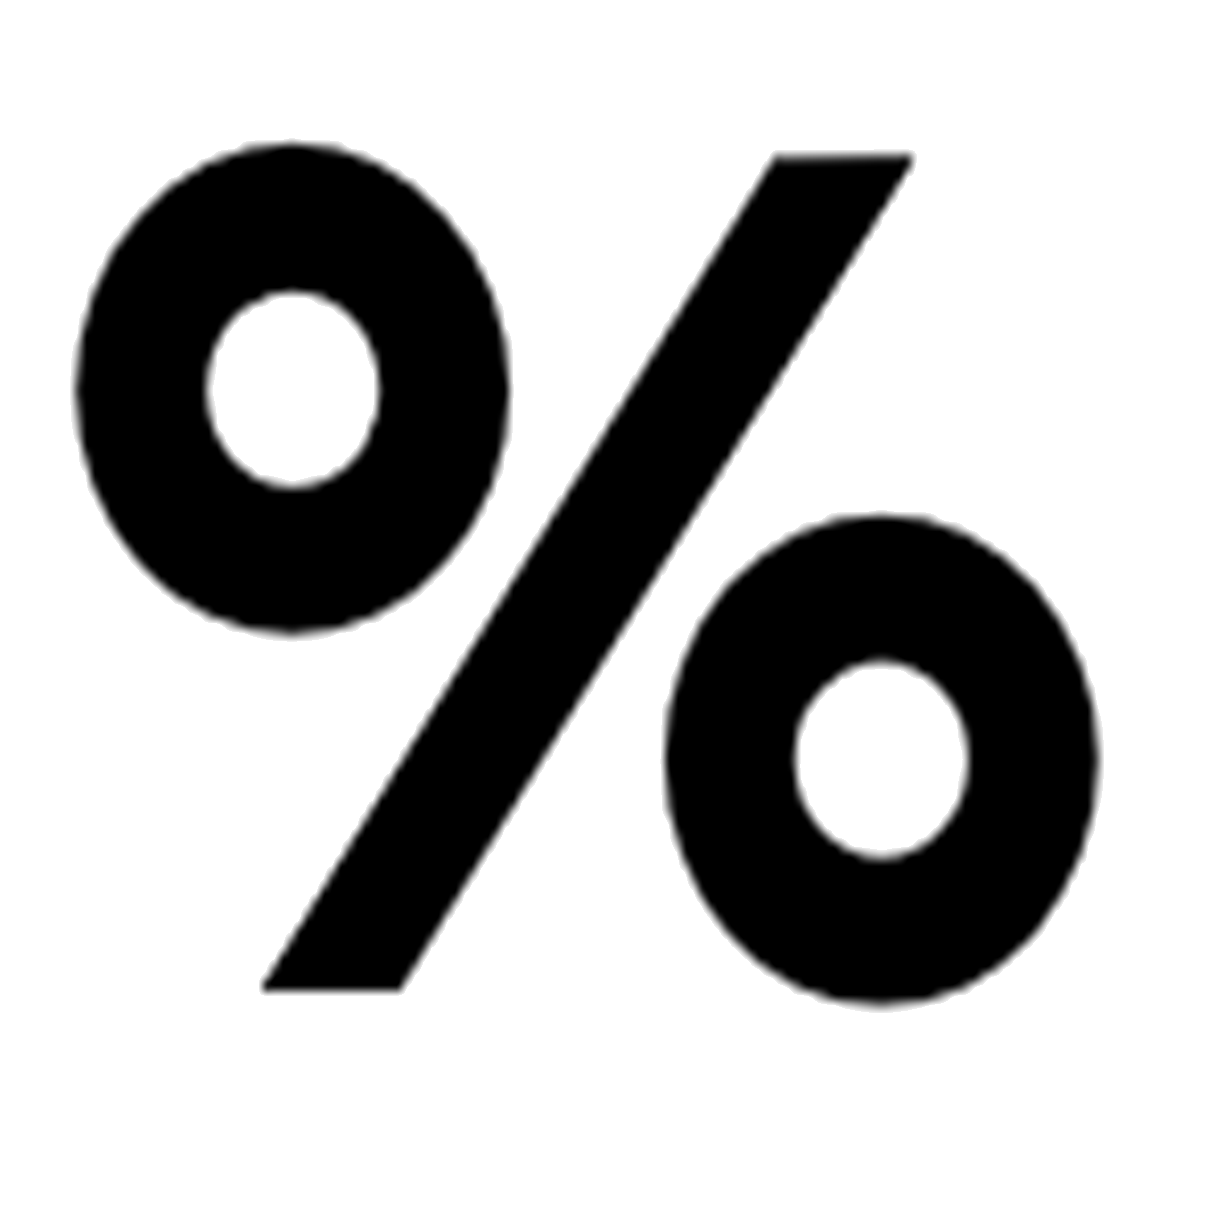 Imagen del símbolo que representa un porcentaje